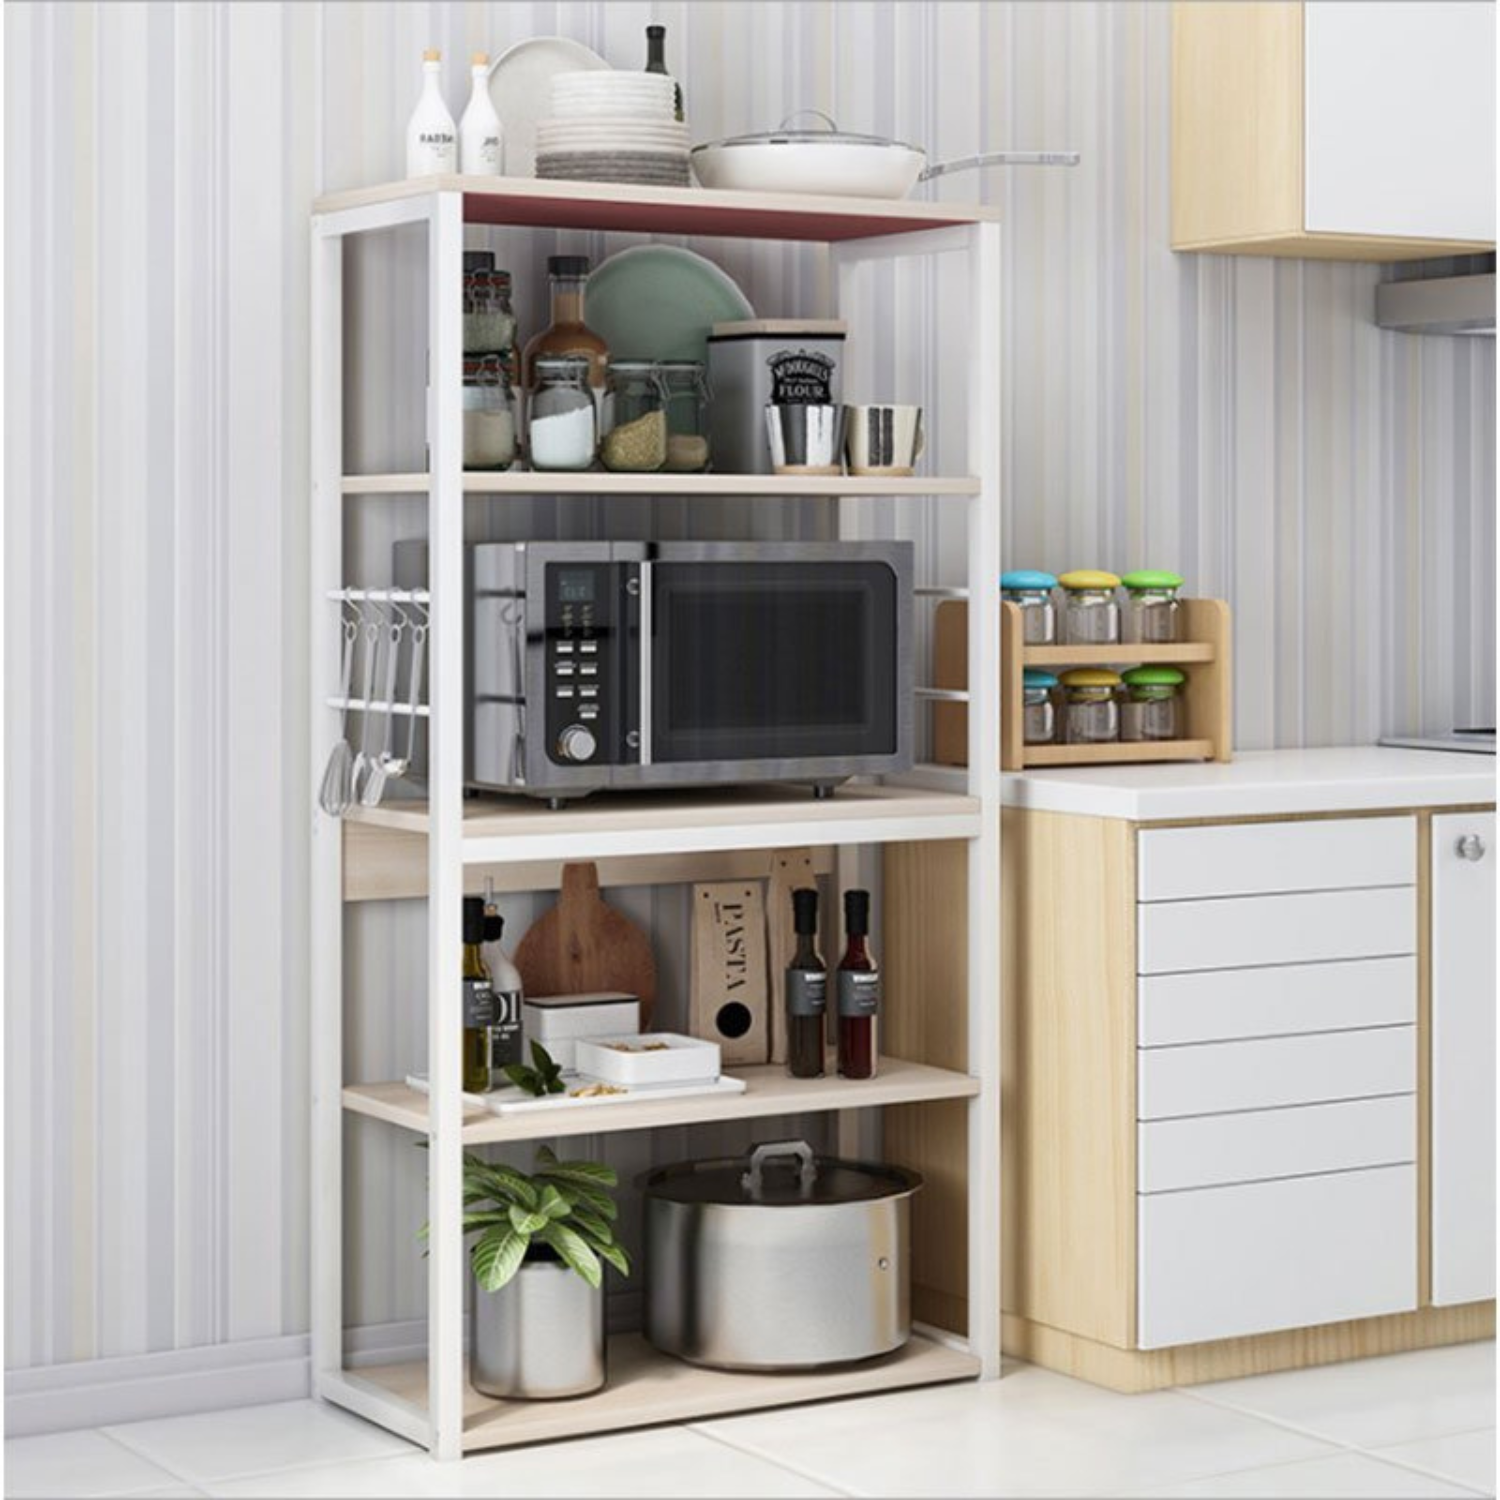 https://meyvaser.com/8227/estanteria-de-cocina-alta-con-marco-de-metal-blanco-estante-para-microondas-50x30x130-cm-color-natural-y-blanco.jpg